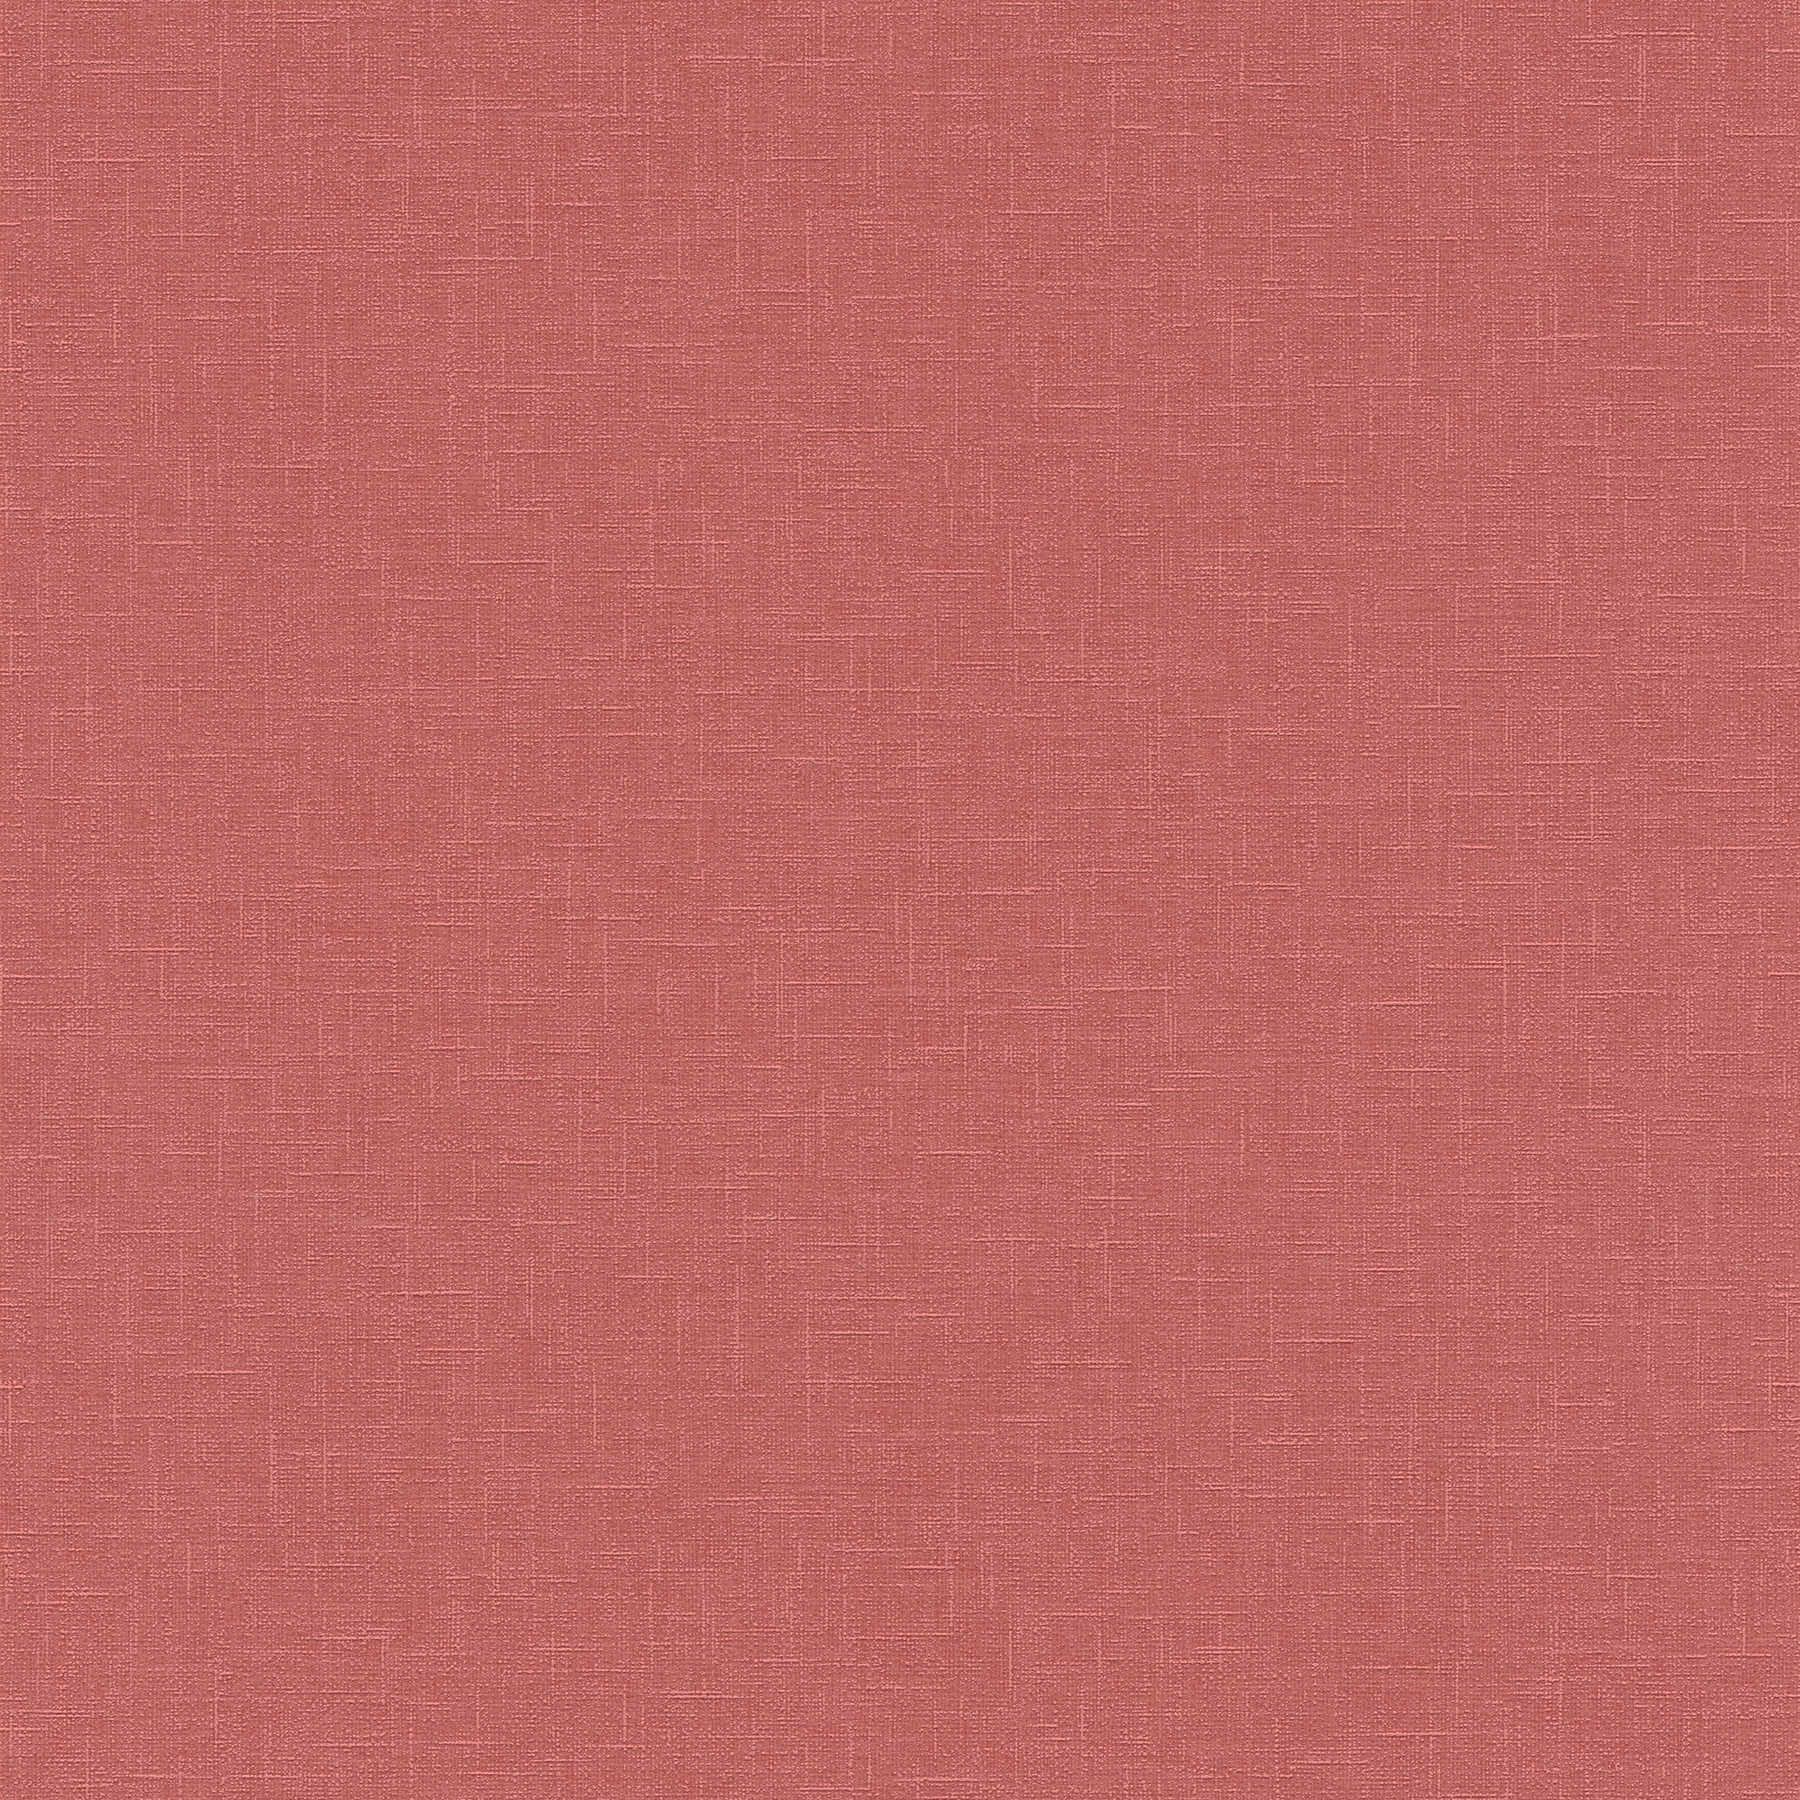 papel pintado rosa viejo liso con estructura textil en estilo rústico
